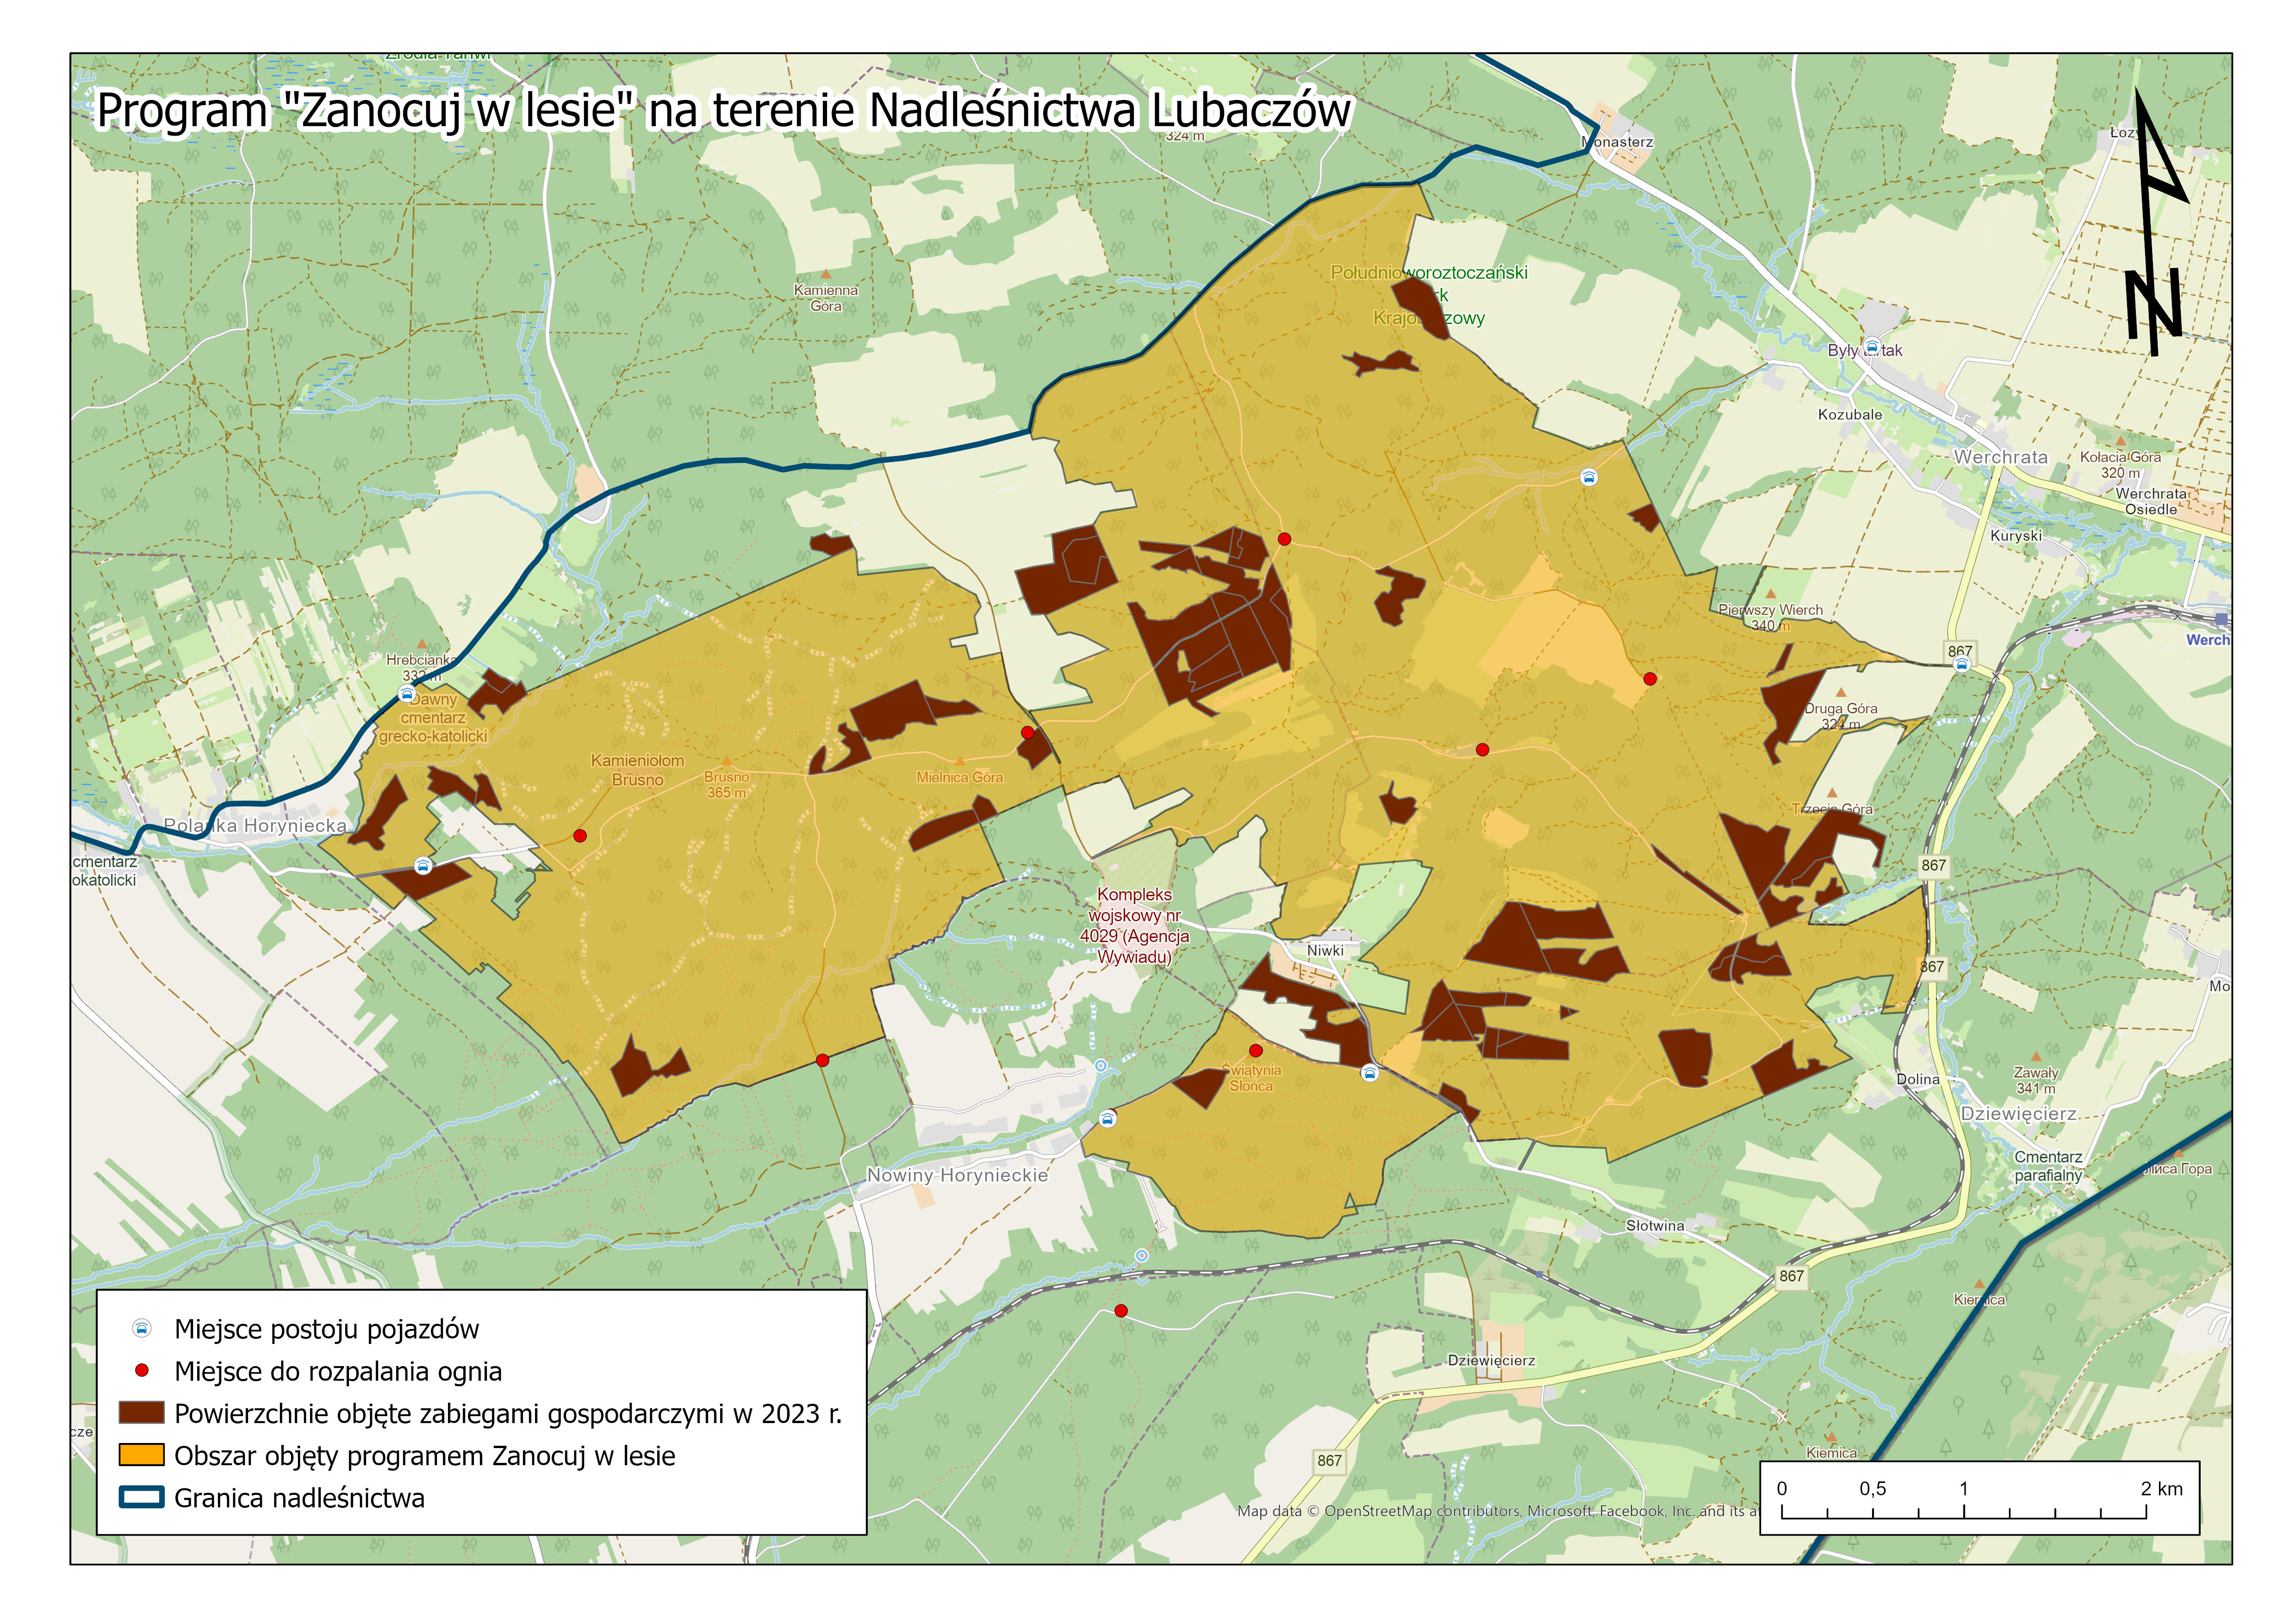 Mapa z lokalizacją obszaru objętego programem Zanocuj w lesie